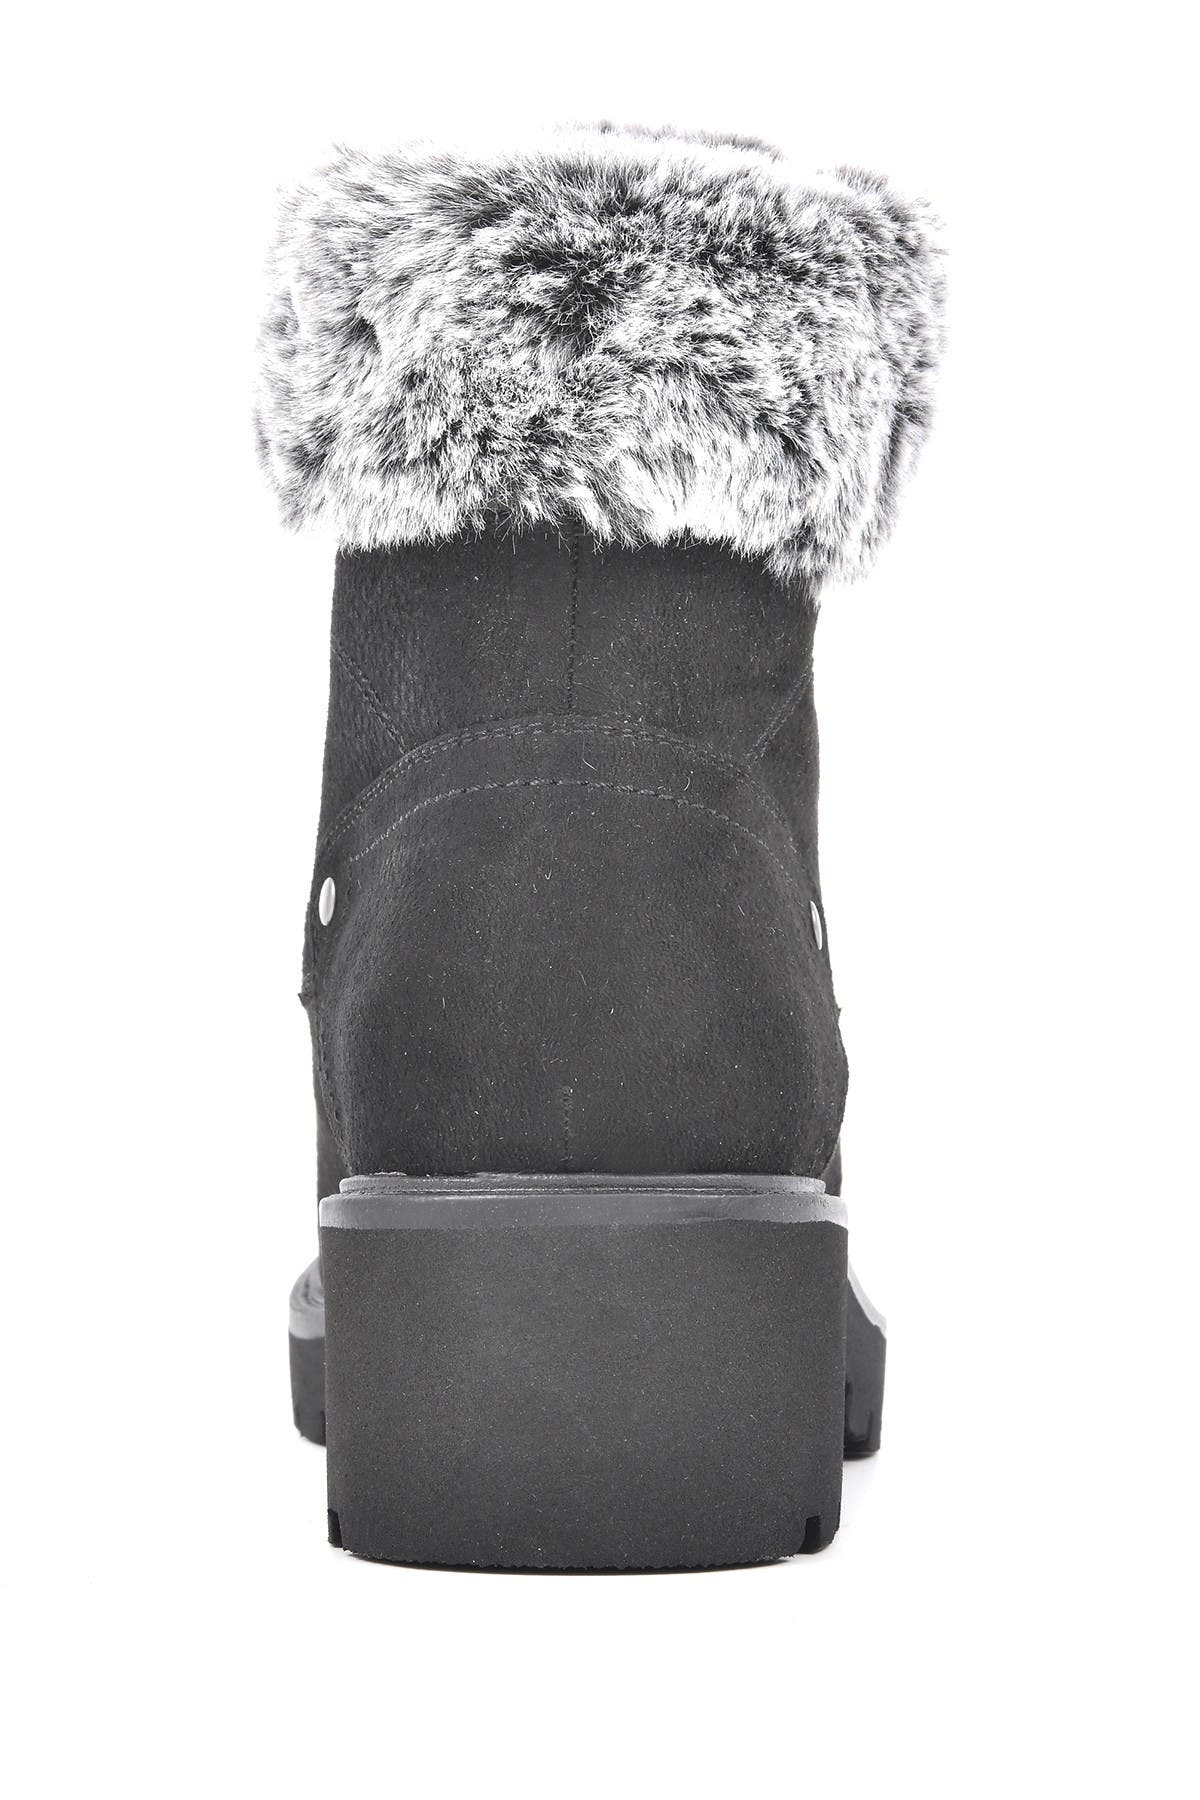 White Mountain Footwear Deserve Faux Fur Hiker Boot In Open Grey28